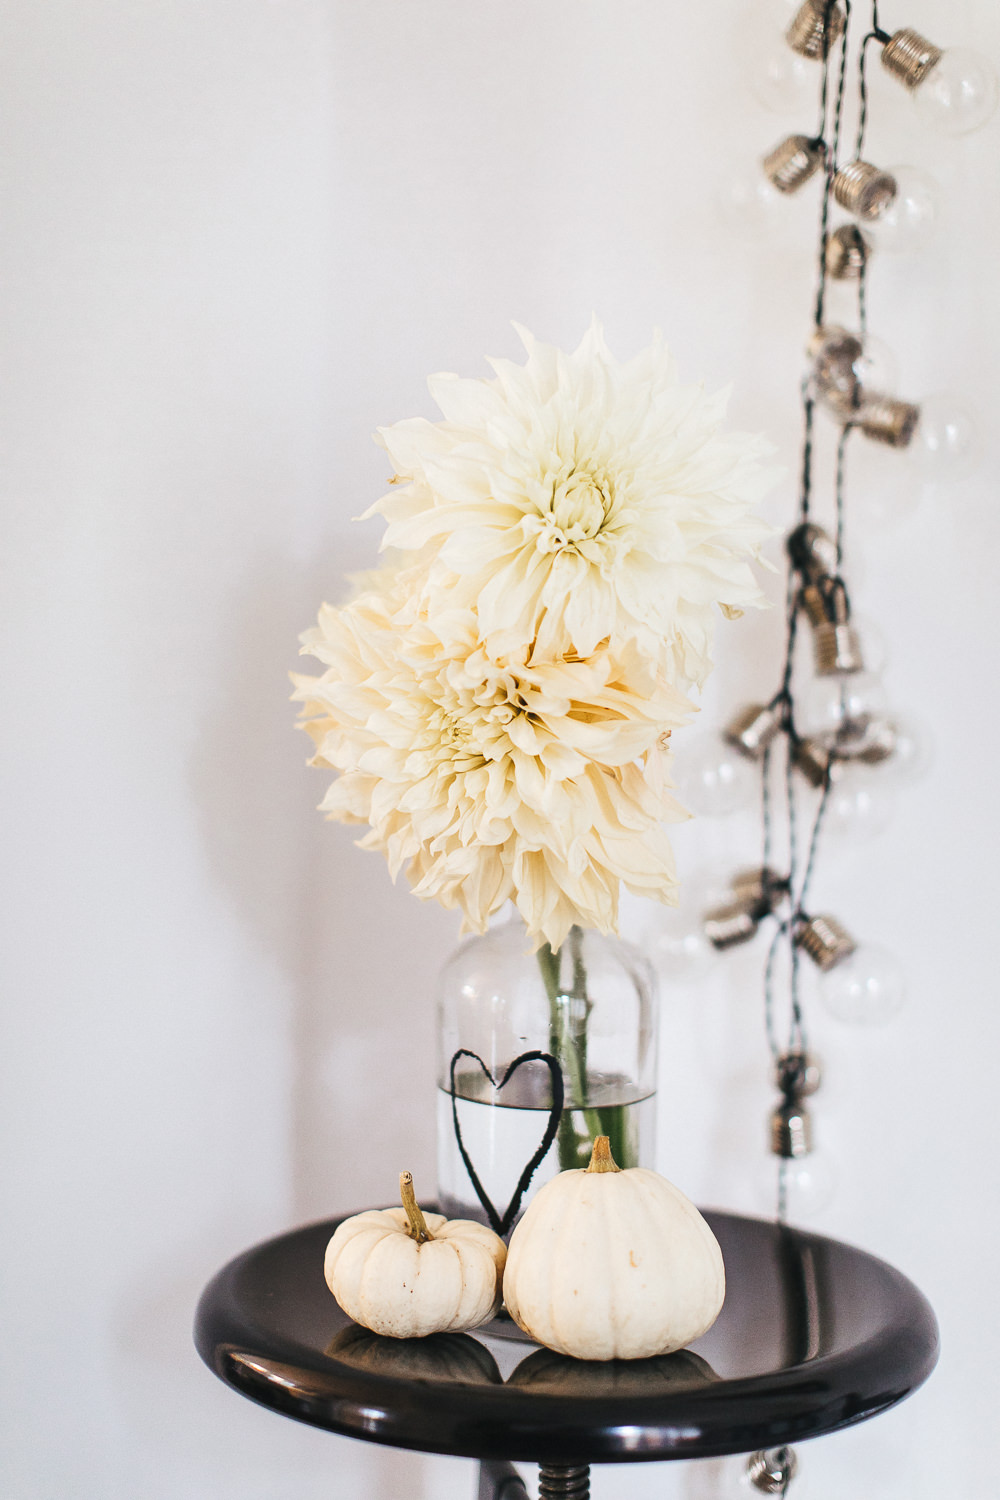 White dahlias in bottle vase